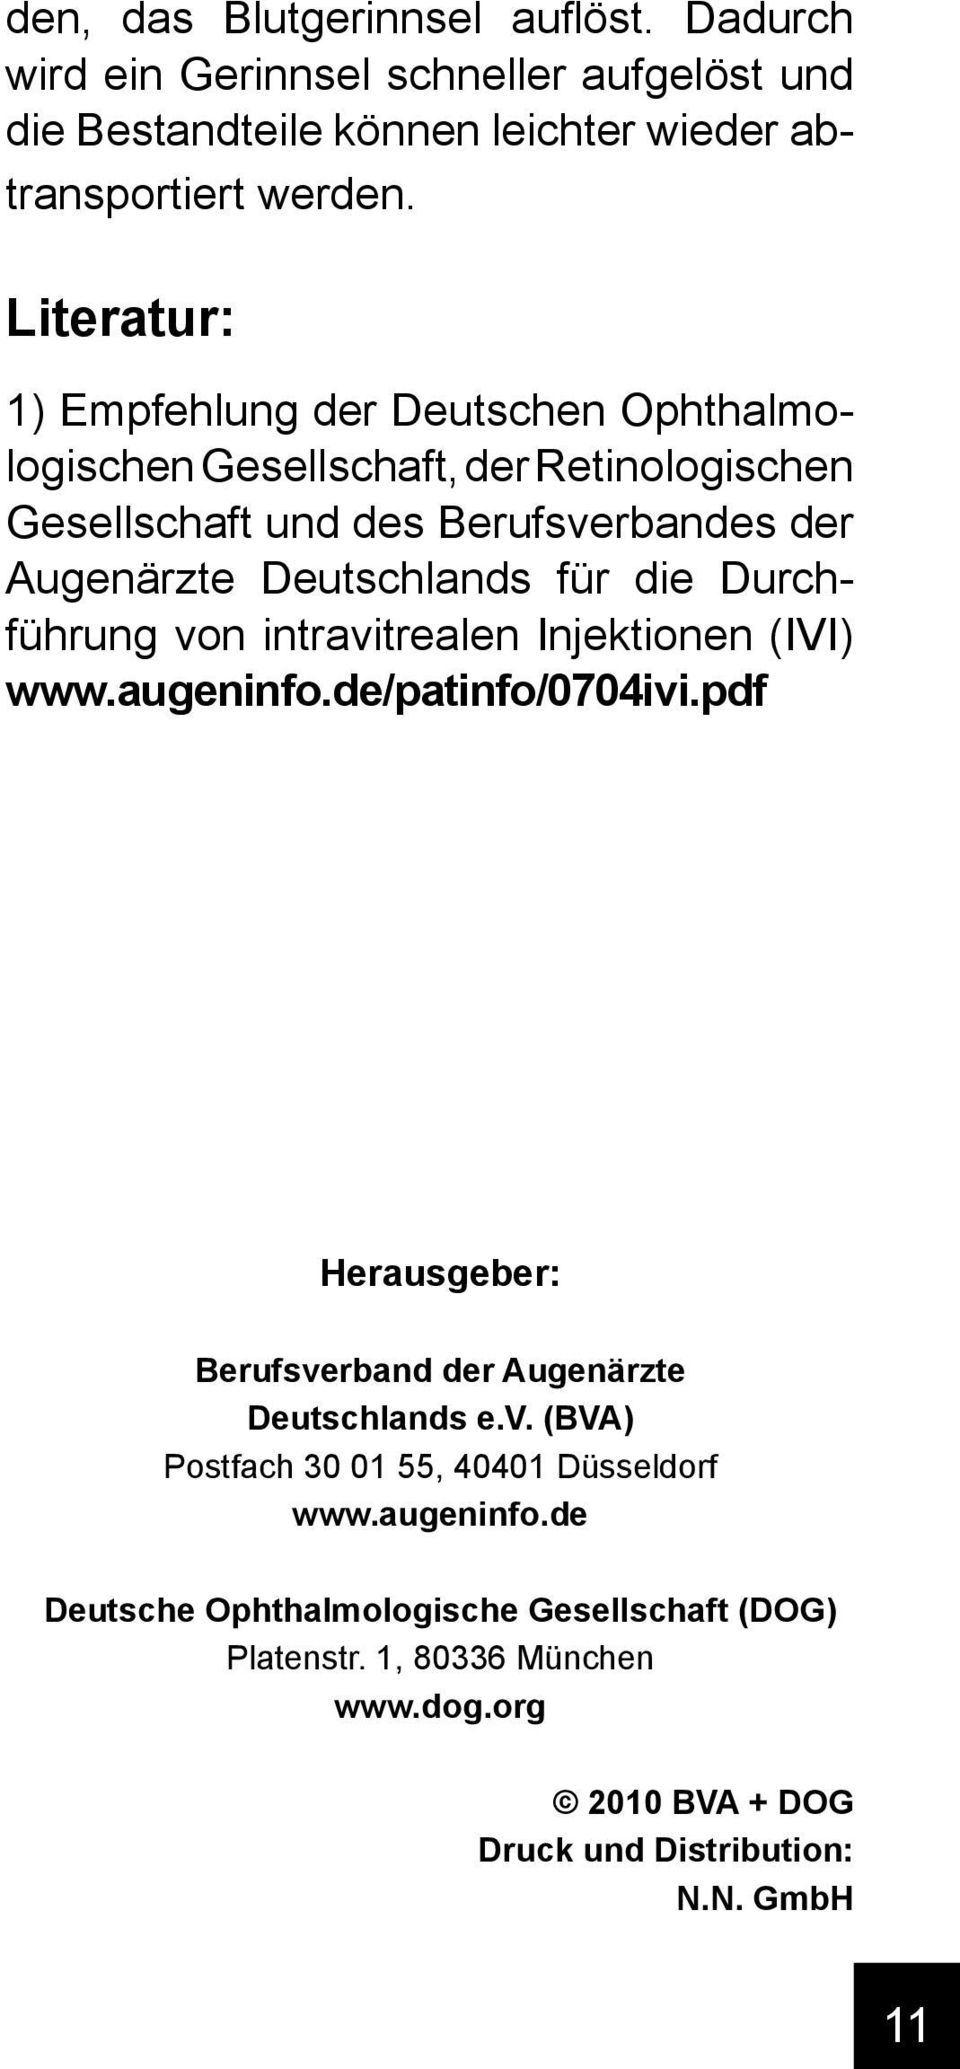 die Durchführung von intravitrealen Injektionen (IVI) www.augeninfo.de/patinfo/0704ivi.pdf Herausgeber: Berufsverband der Augenärzte Deutschlands e.v. (BVA) Postfach 30 01 55, 40401 Düsseldorf www.